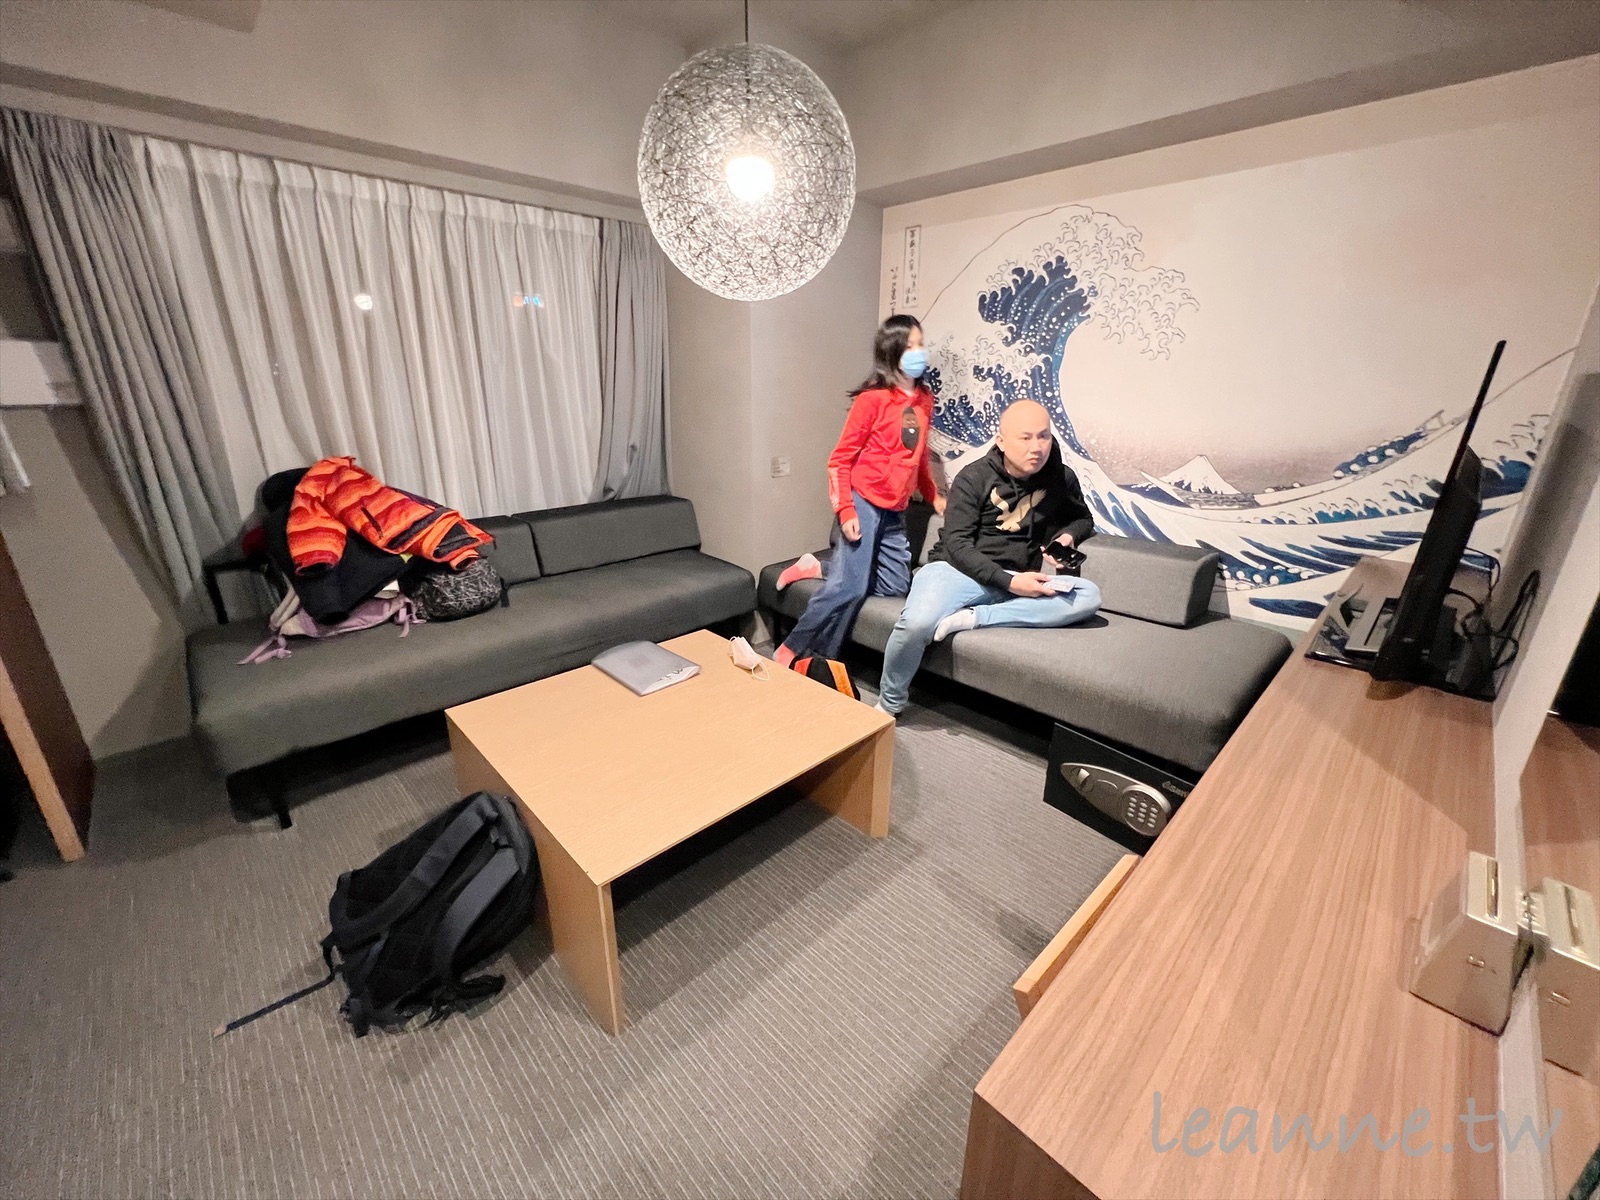 [東京住宿]上野Minn Ueno公寓式飯店 房間超大 附廚房 離上野車站走路不到10分鐘